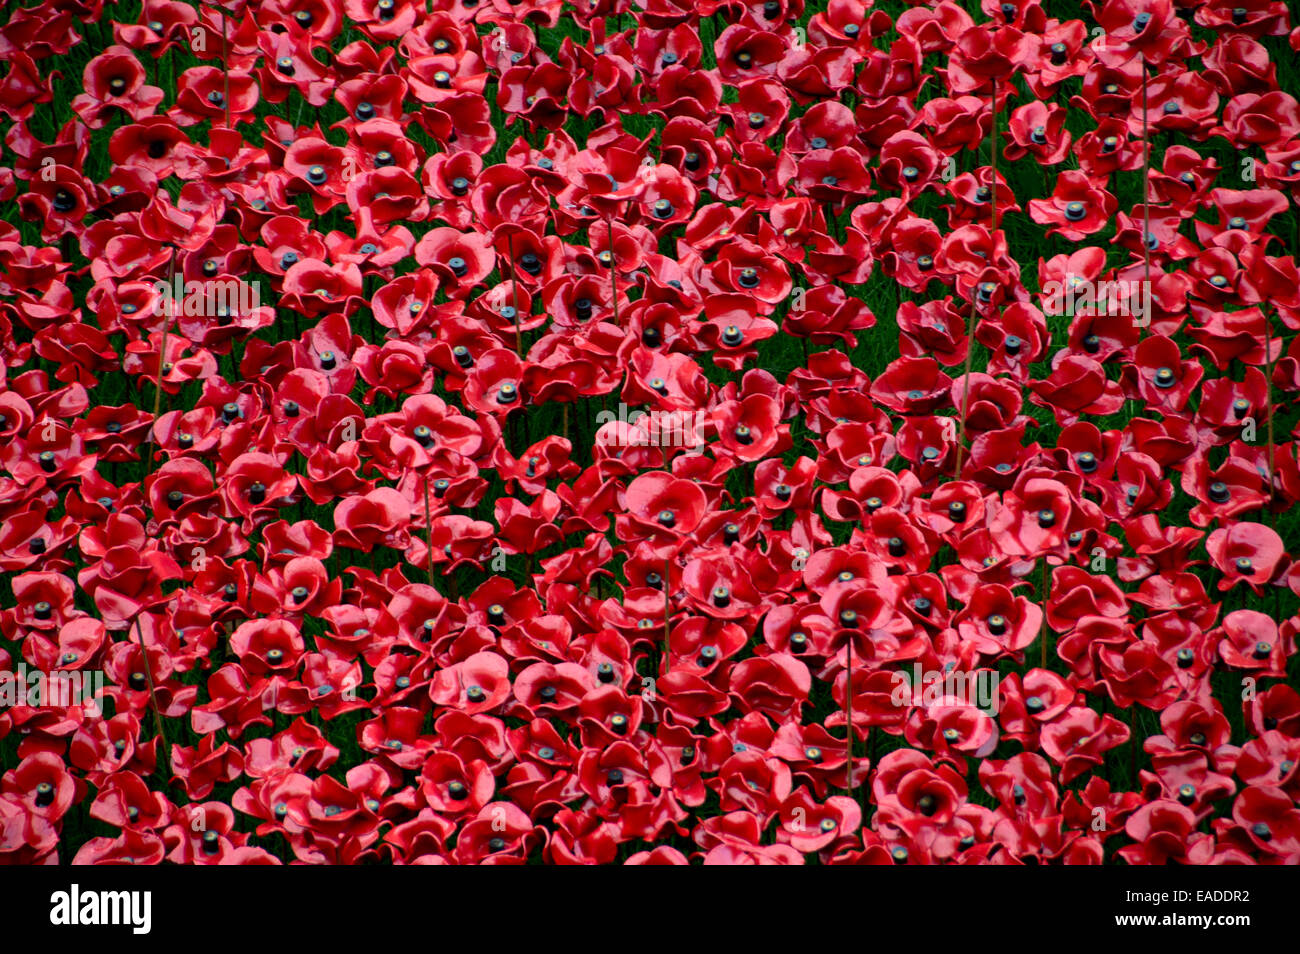 "Blut fegte Länder und Meere rot". Mehr als 800.000 Keramik Mohnblumen im ersten Weltkrieg gefallenen Soldaten zu gedenken Stockfoto